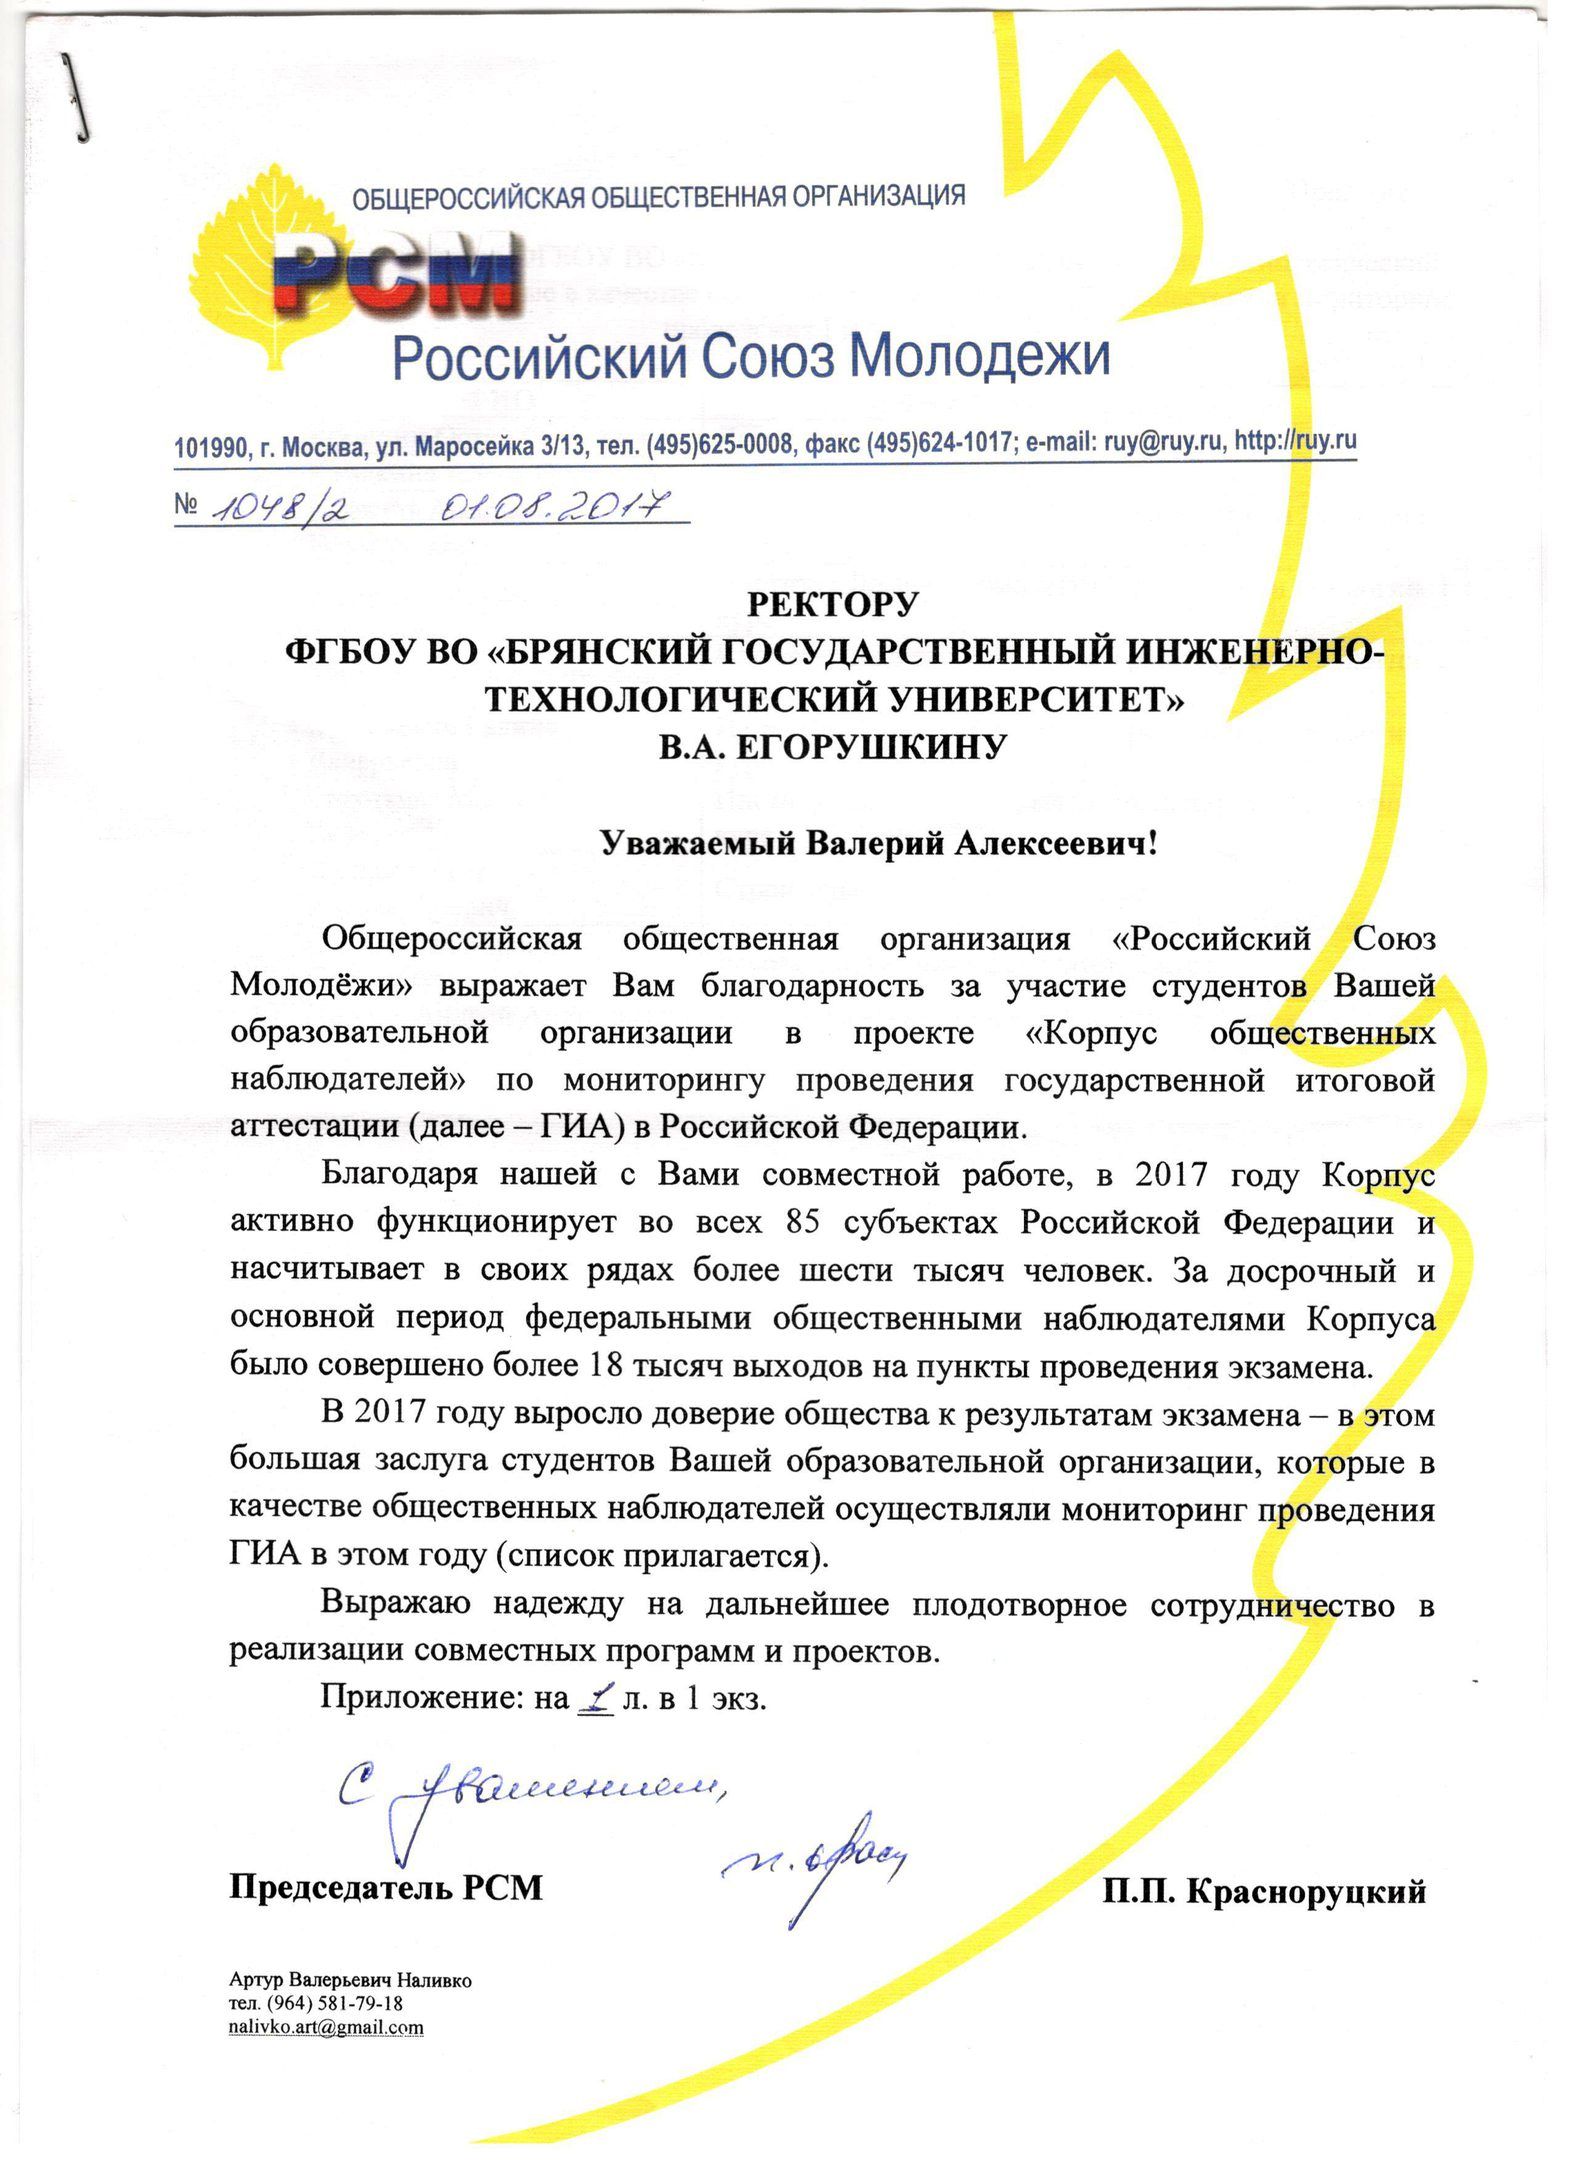 Благодарственное письмо от Российского Союза Молодежи